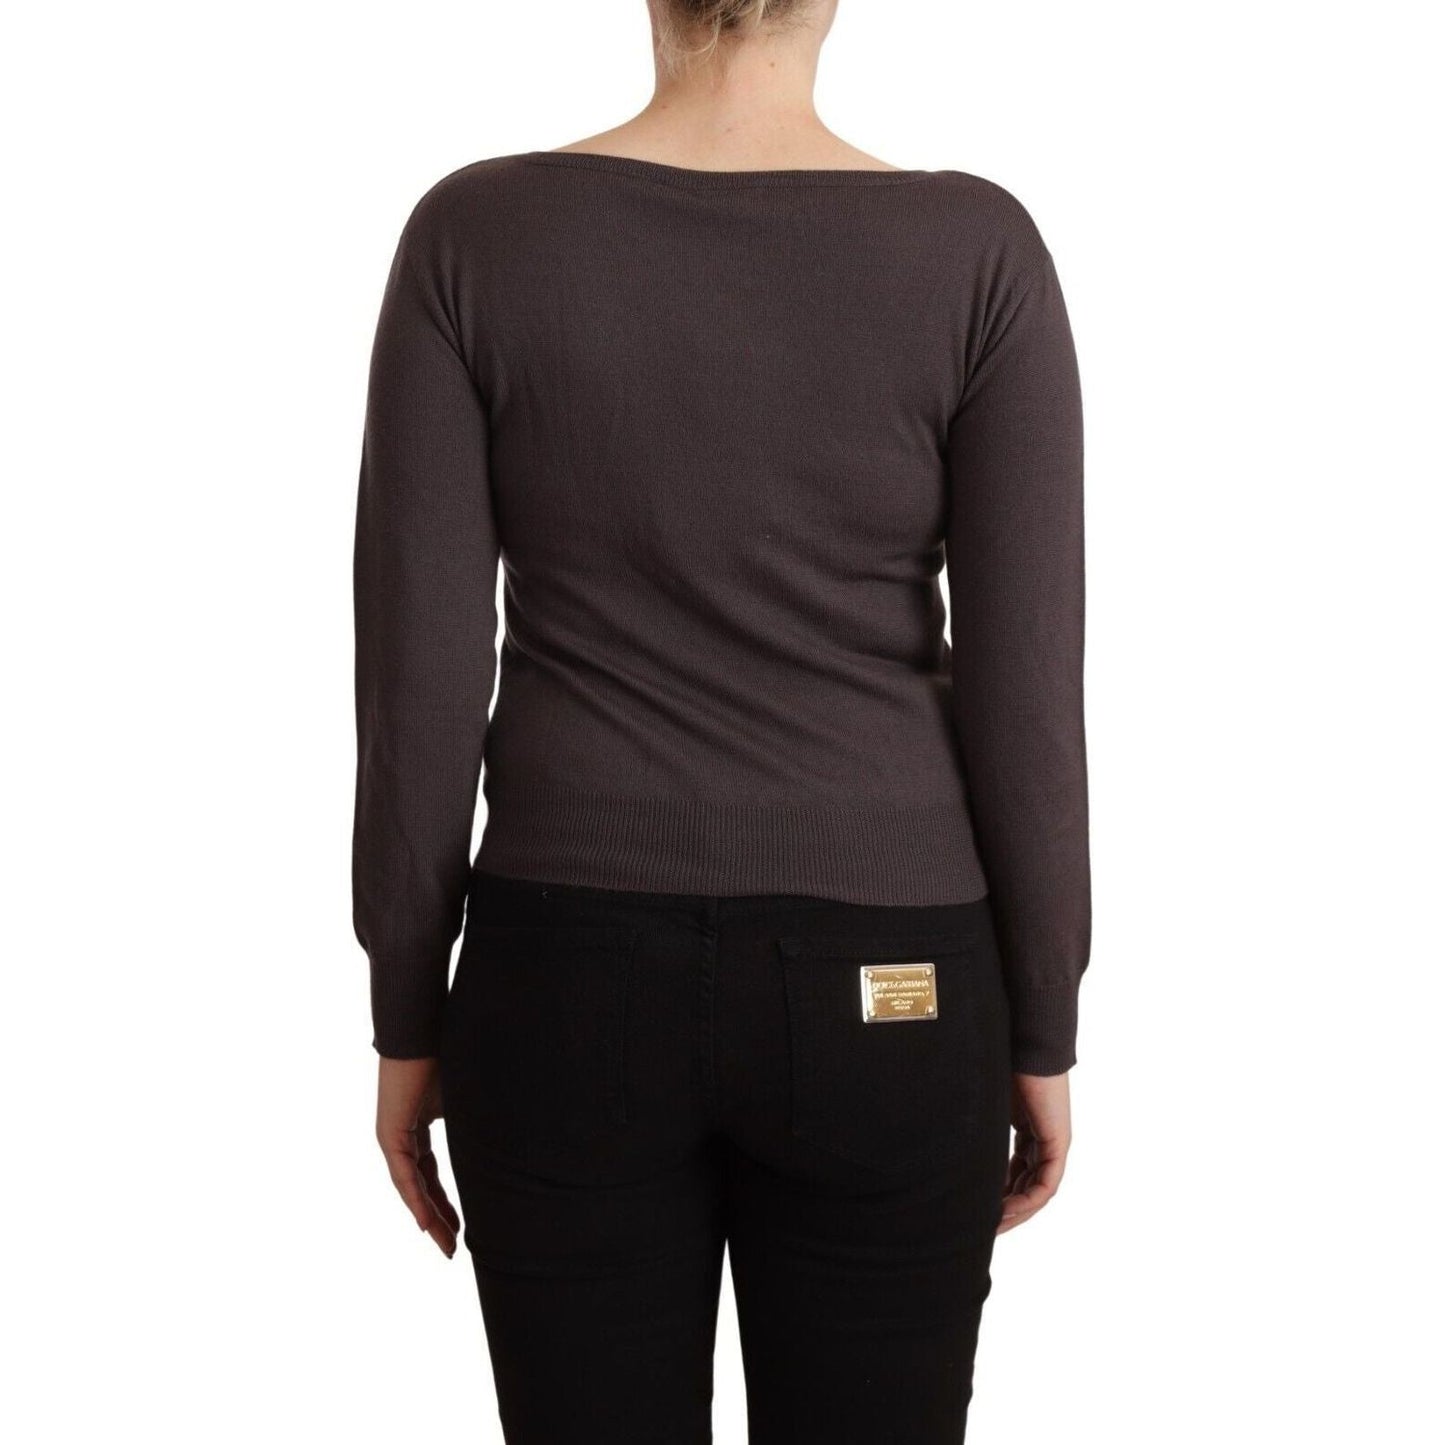 John Galliano Elegant Wool Long Sleeve Sweater brown-wool-sequined-long-sleeves-pullover-sweater